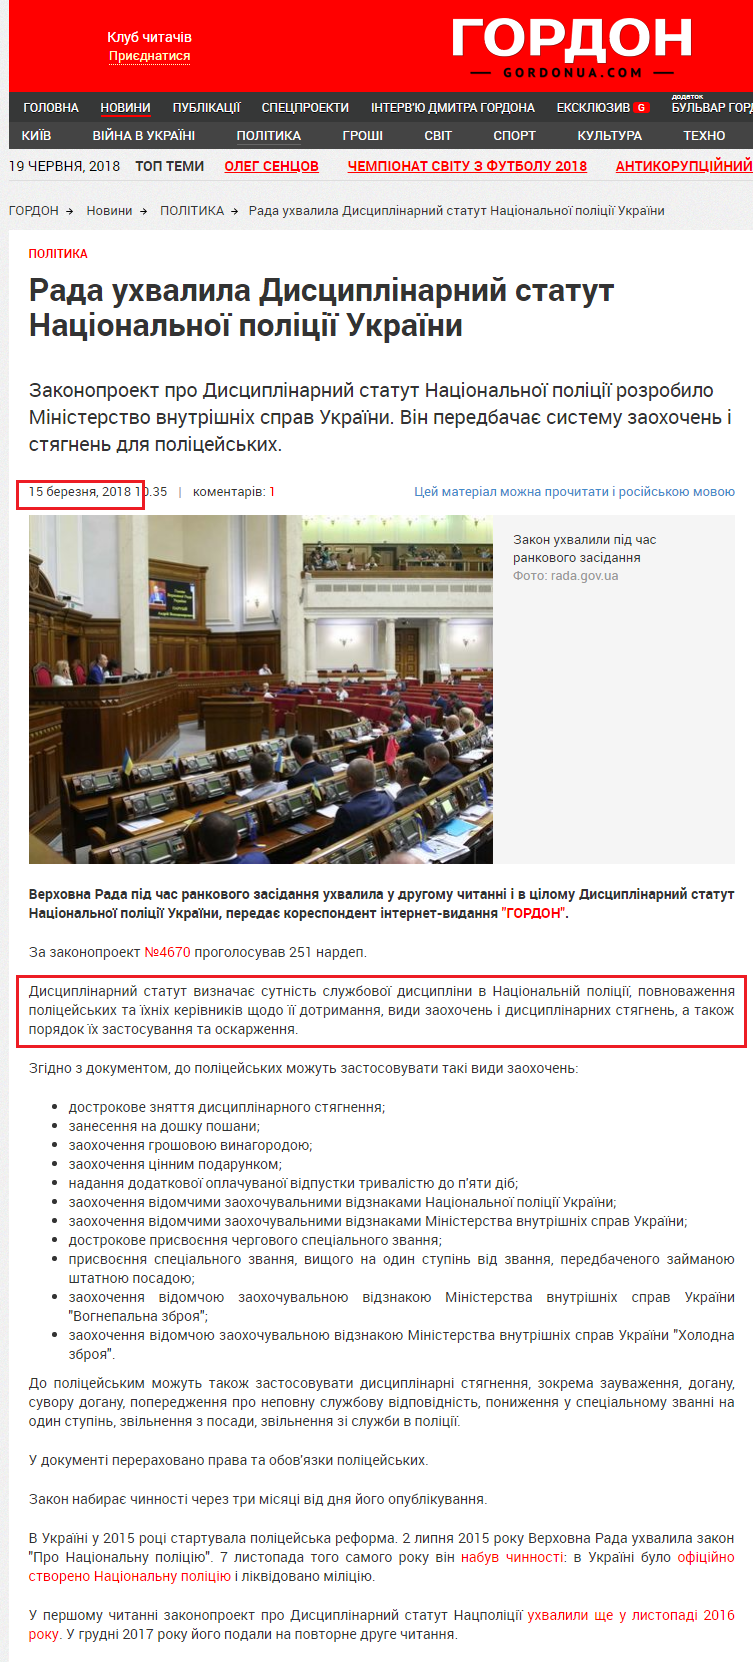 http://gordonua.com/ukr/news/politics/rada-prijnjala-distsiplinarnij-statut-natsionalnoji-politsiji-ukrajini-236575.html